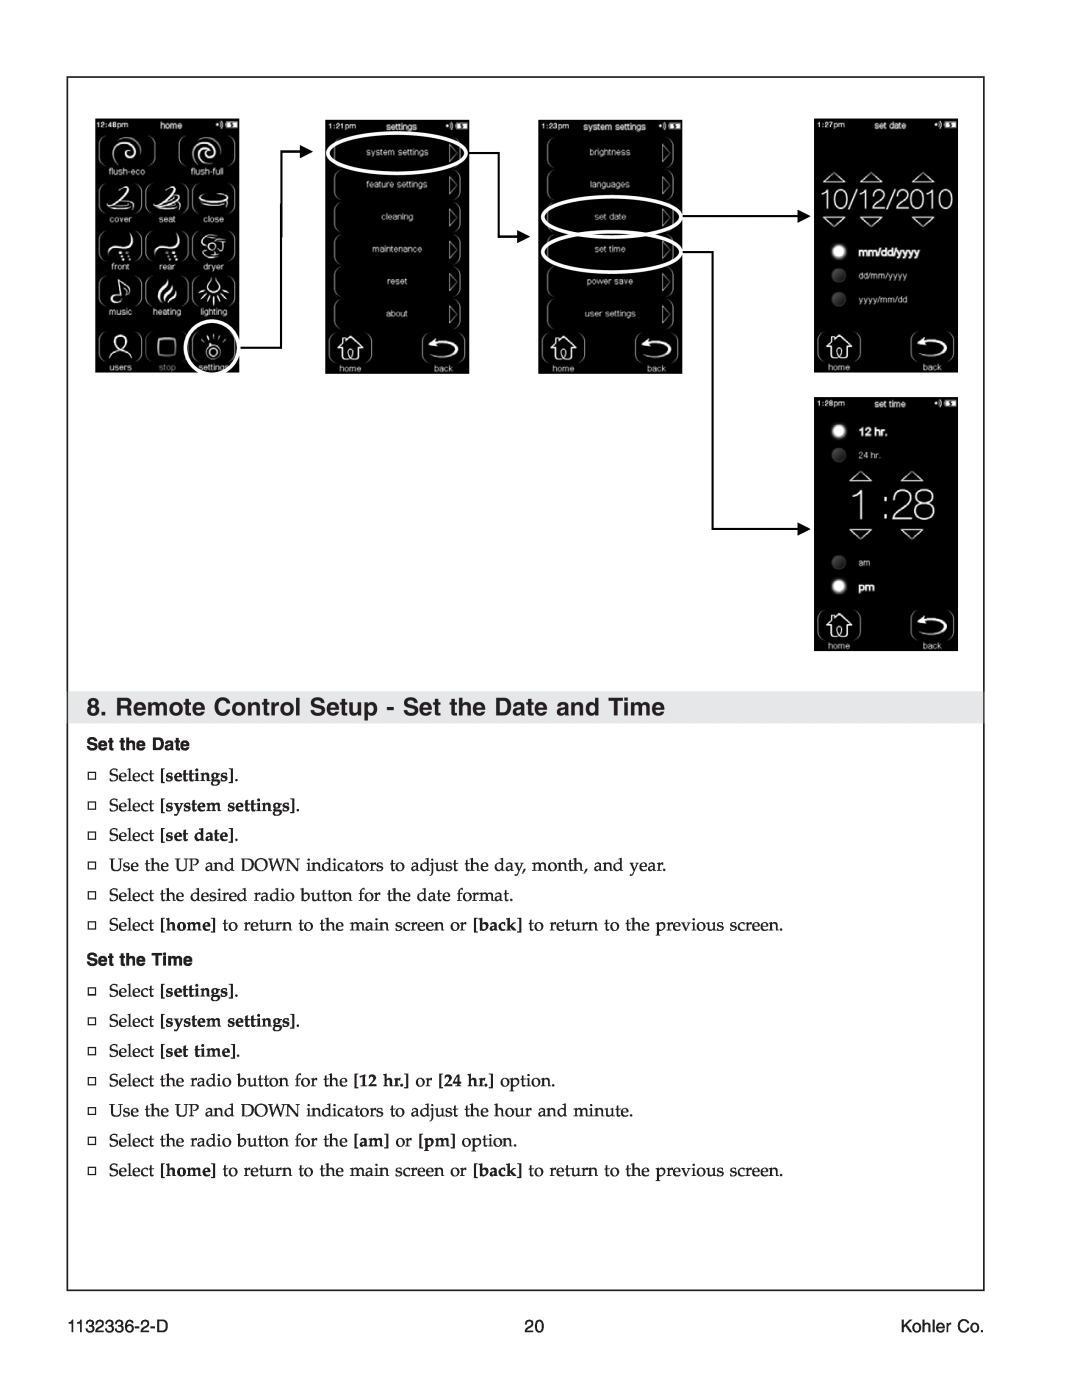 Kohler K-3900 Remote Control Setup - Set the Date and Time, Select set date, Set the Time, Select set time, 1132336-2-D 